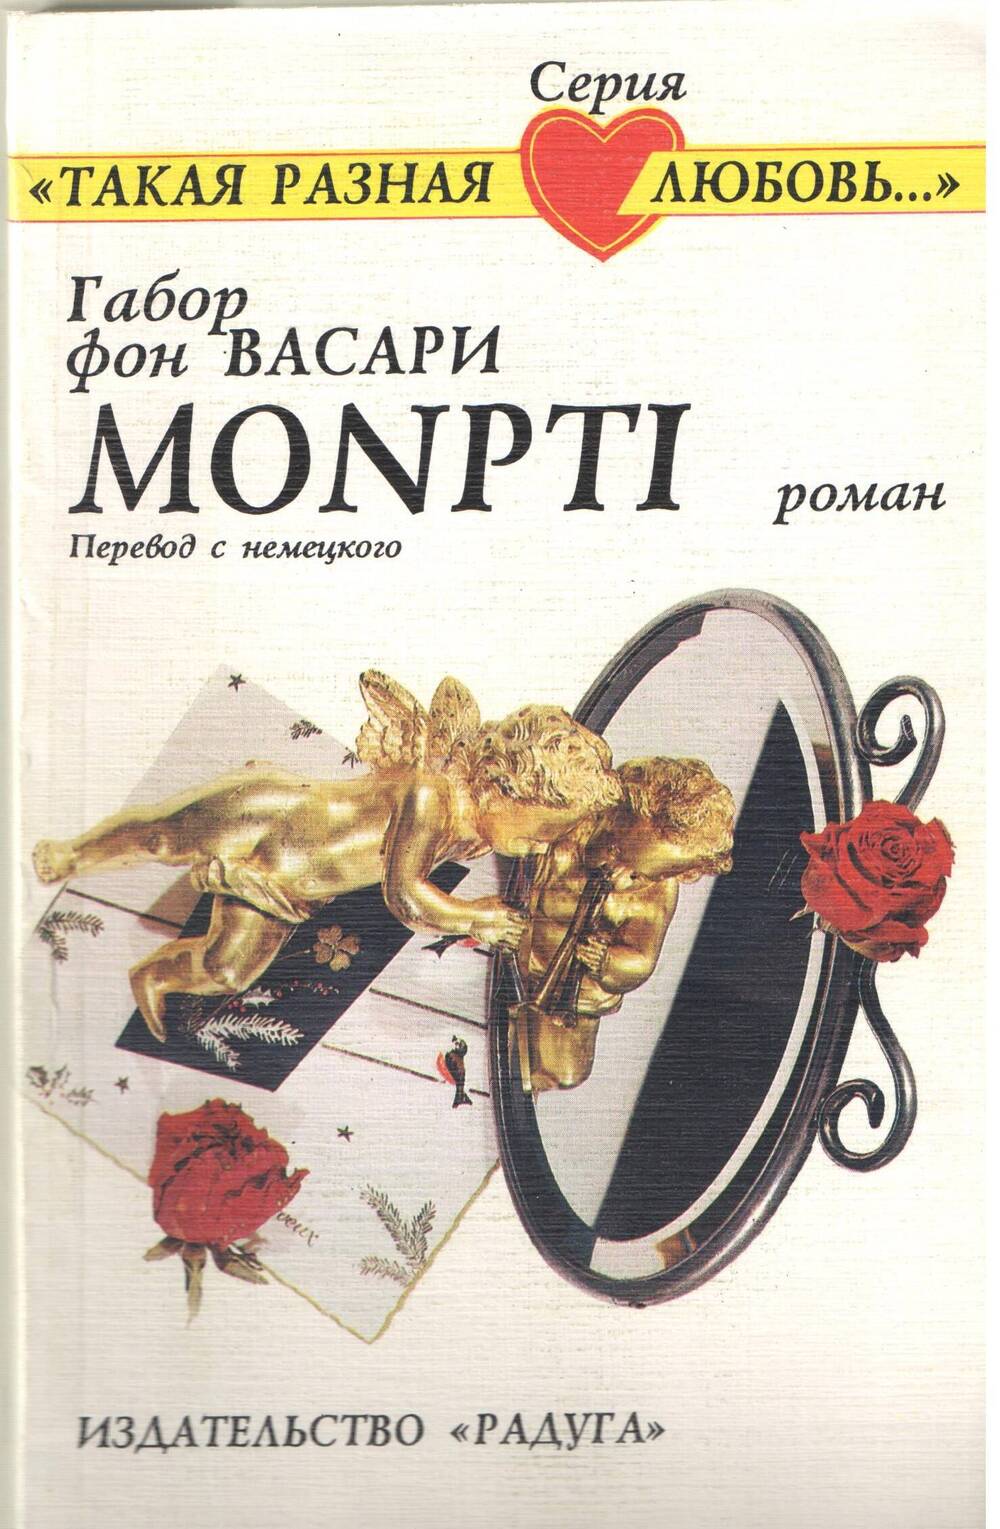 Книга. Г. Васари Monpti.